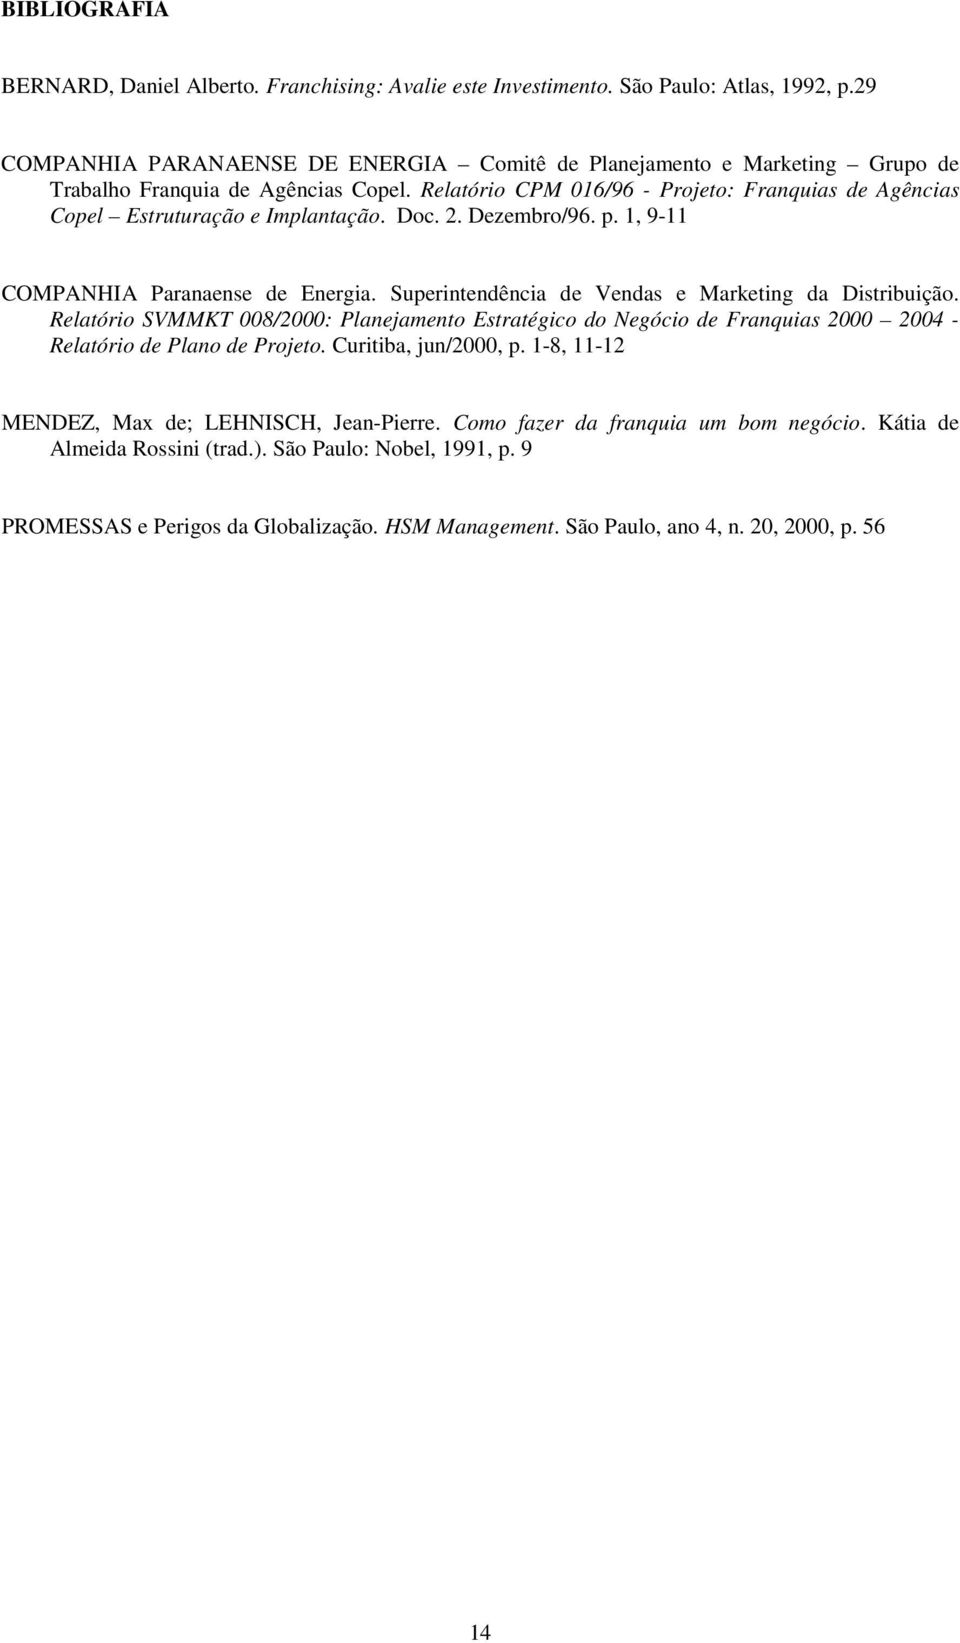 Relatório CPM 016/96 - Projeto: Franquias de Agências Copel Estruturação e Implantação. Doc. 2. Dezembro/96. p. 1, 9-11 COMPANHIA Paranaense de Energia.